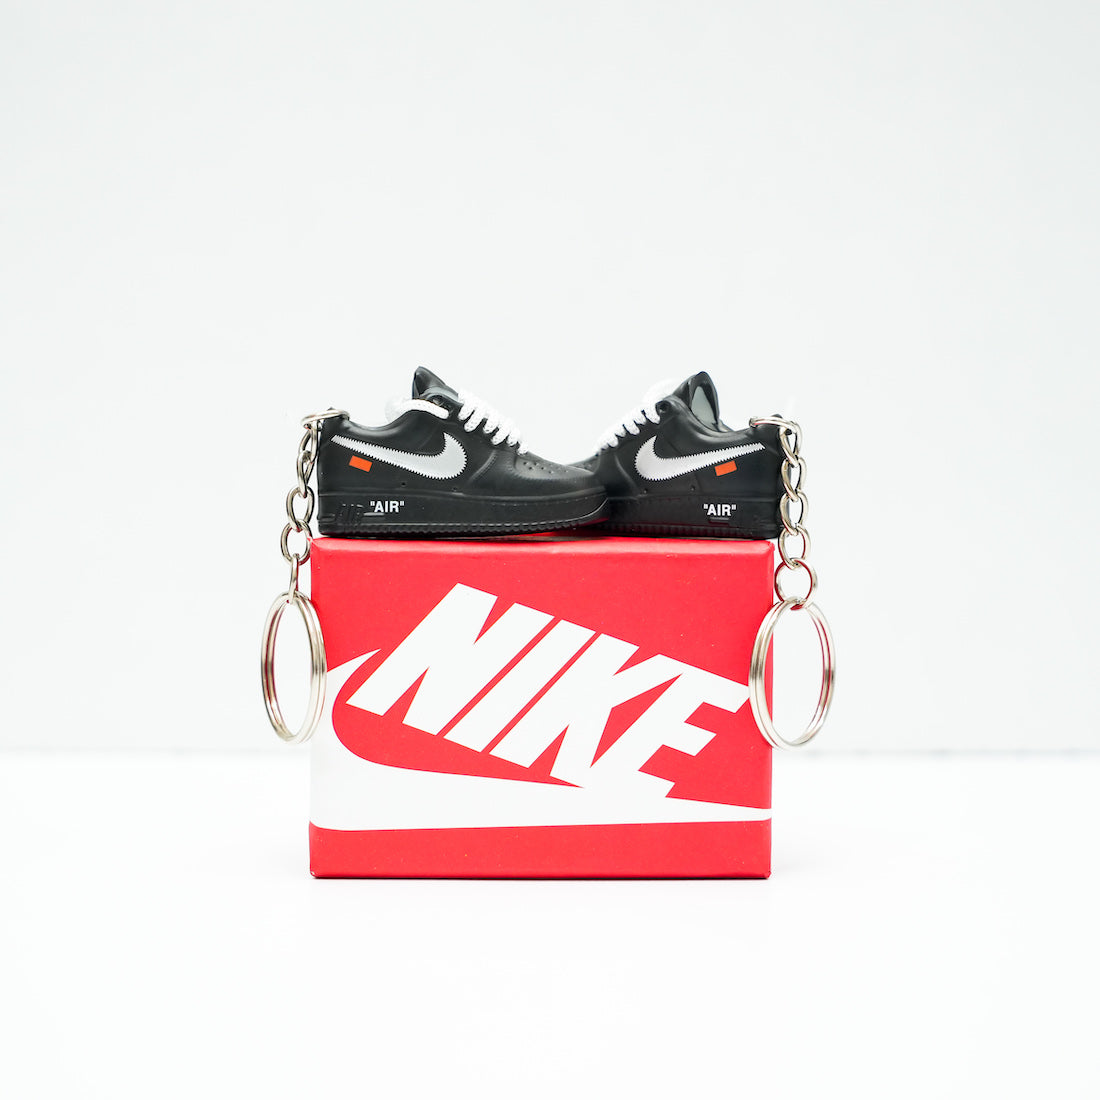 3D Sneaker Keychain With Box | Jordan keychain with box | Kicks Machine